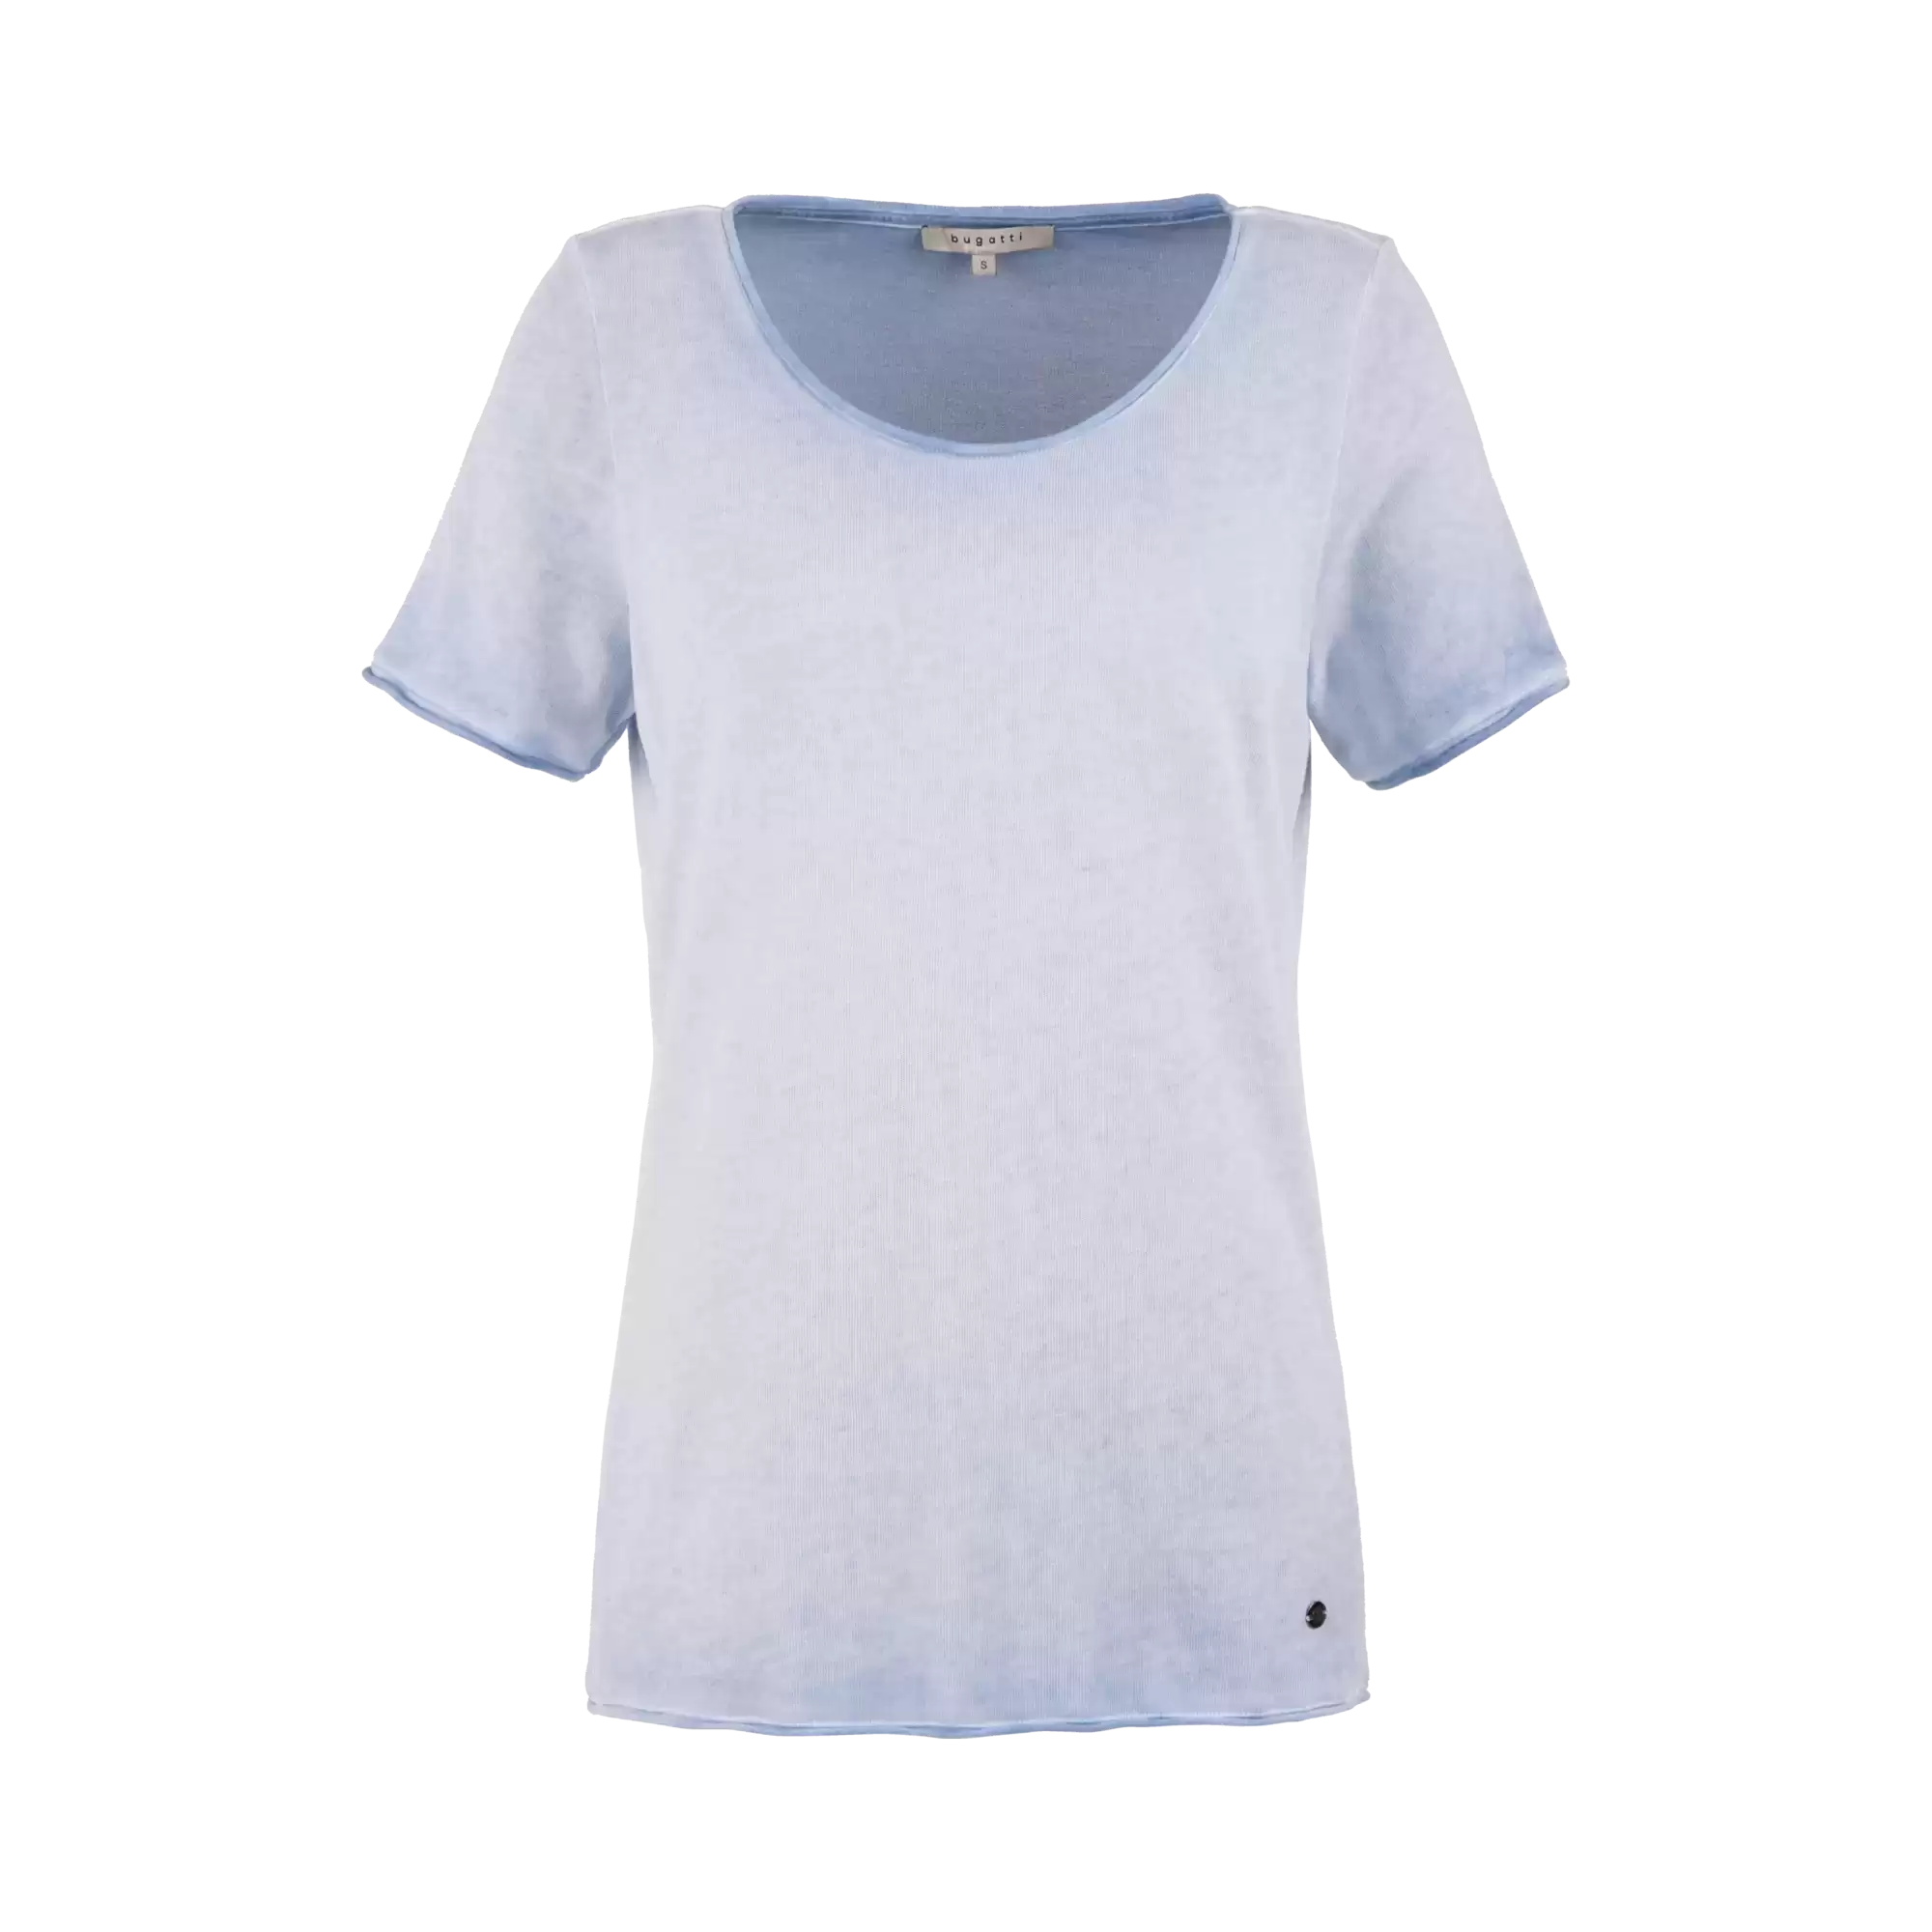 Rundhals T-shirt mit leicht verwaschener Optik in hellblau | bugatti